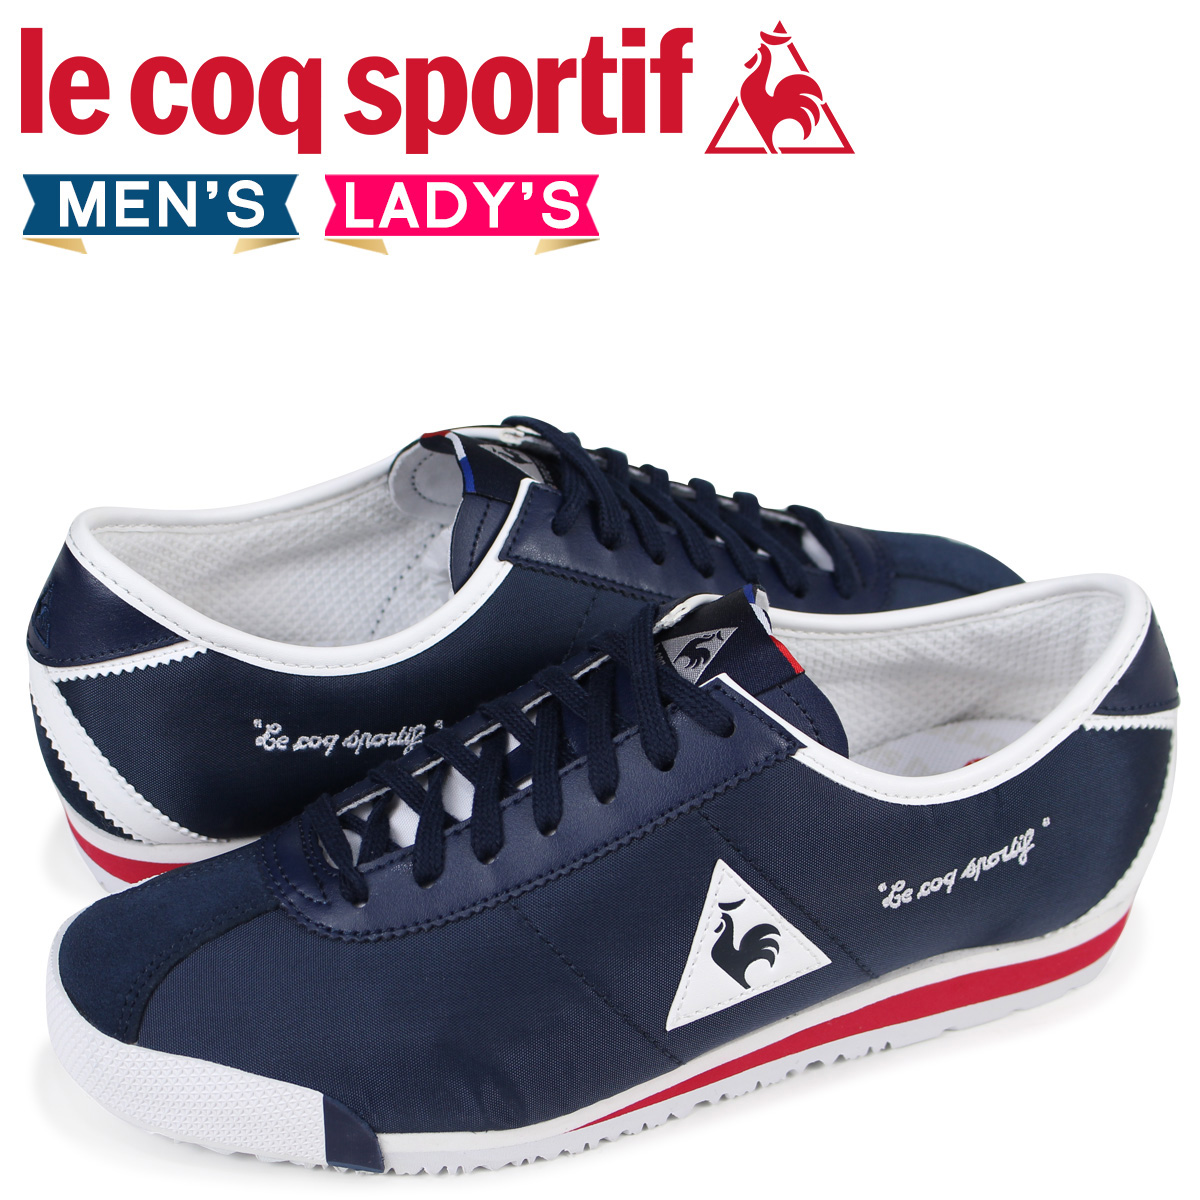 latest le coq sportif shoes